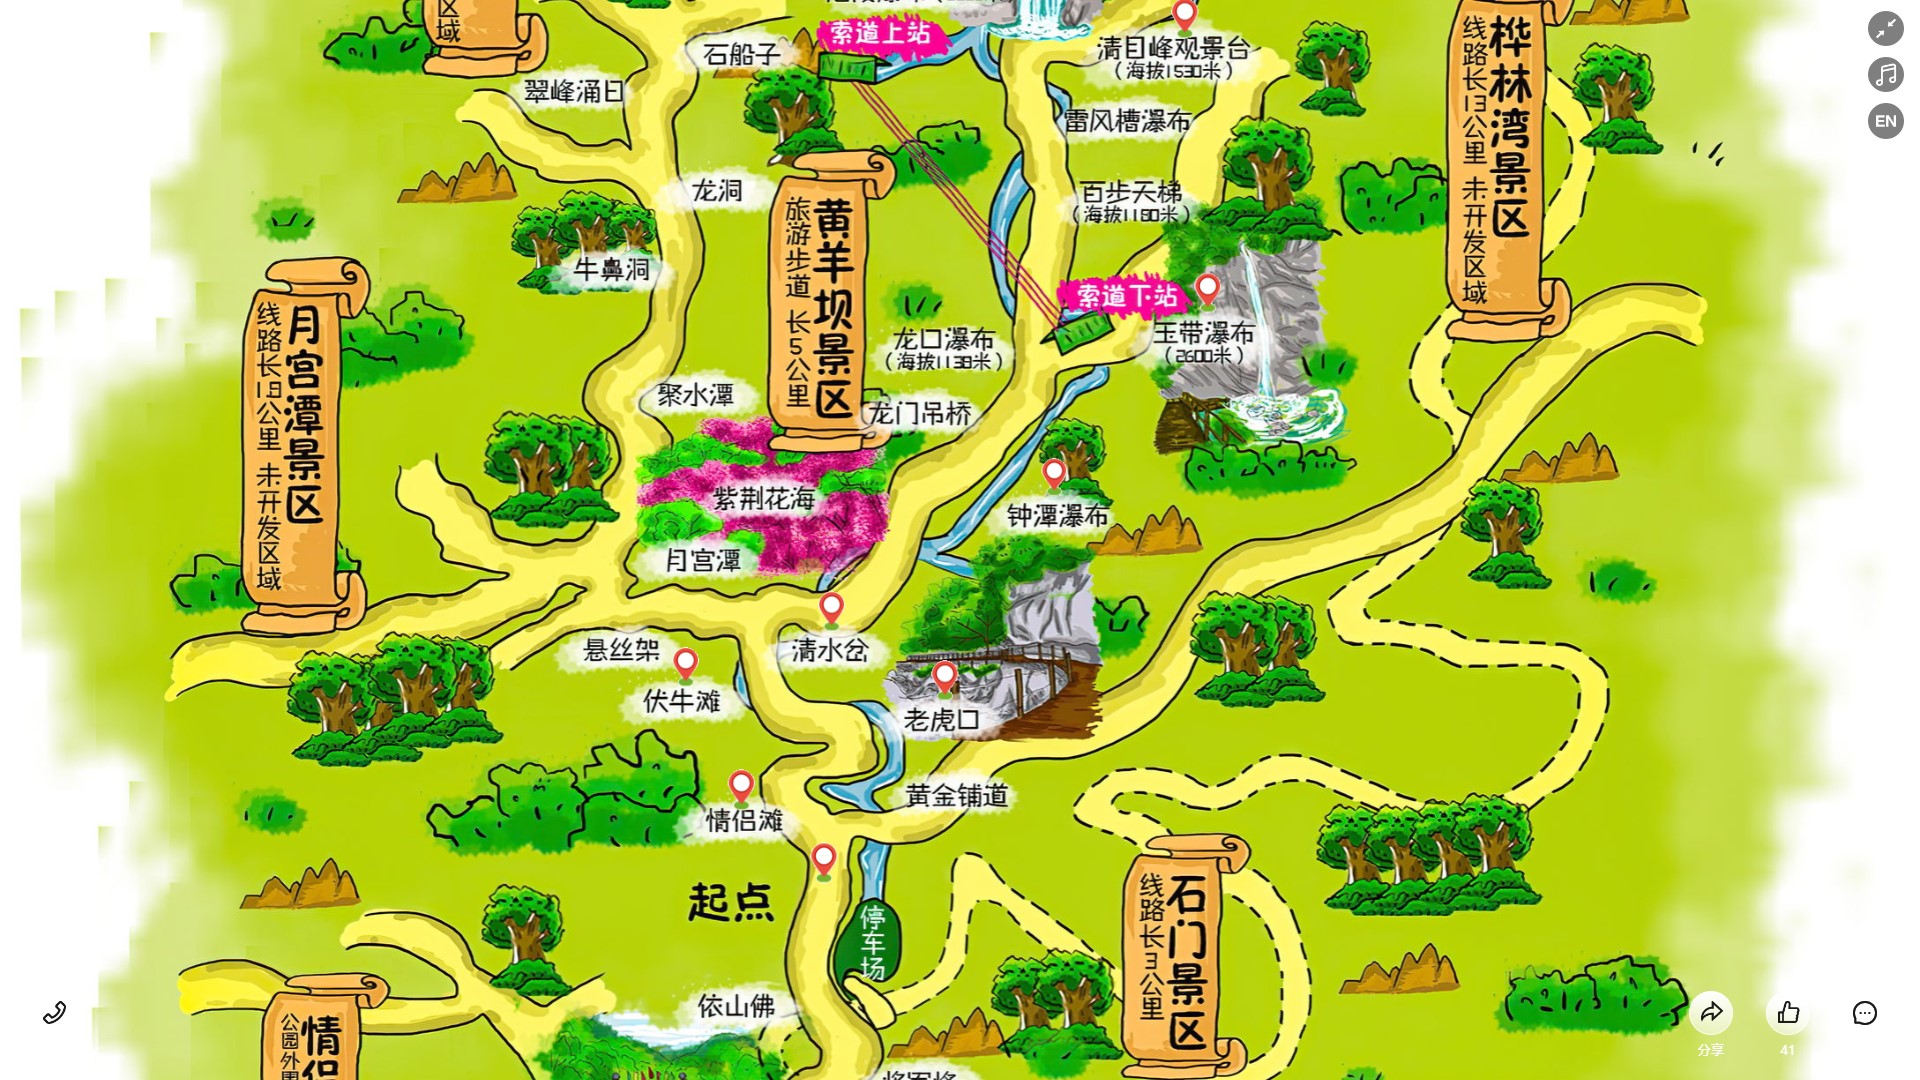 汉寿景区导览系统